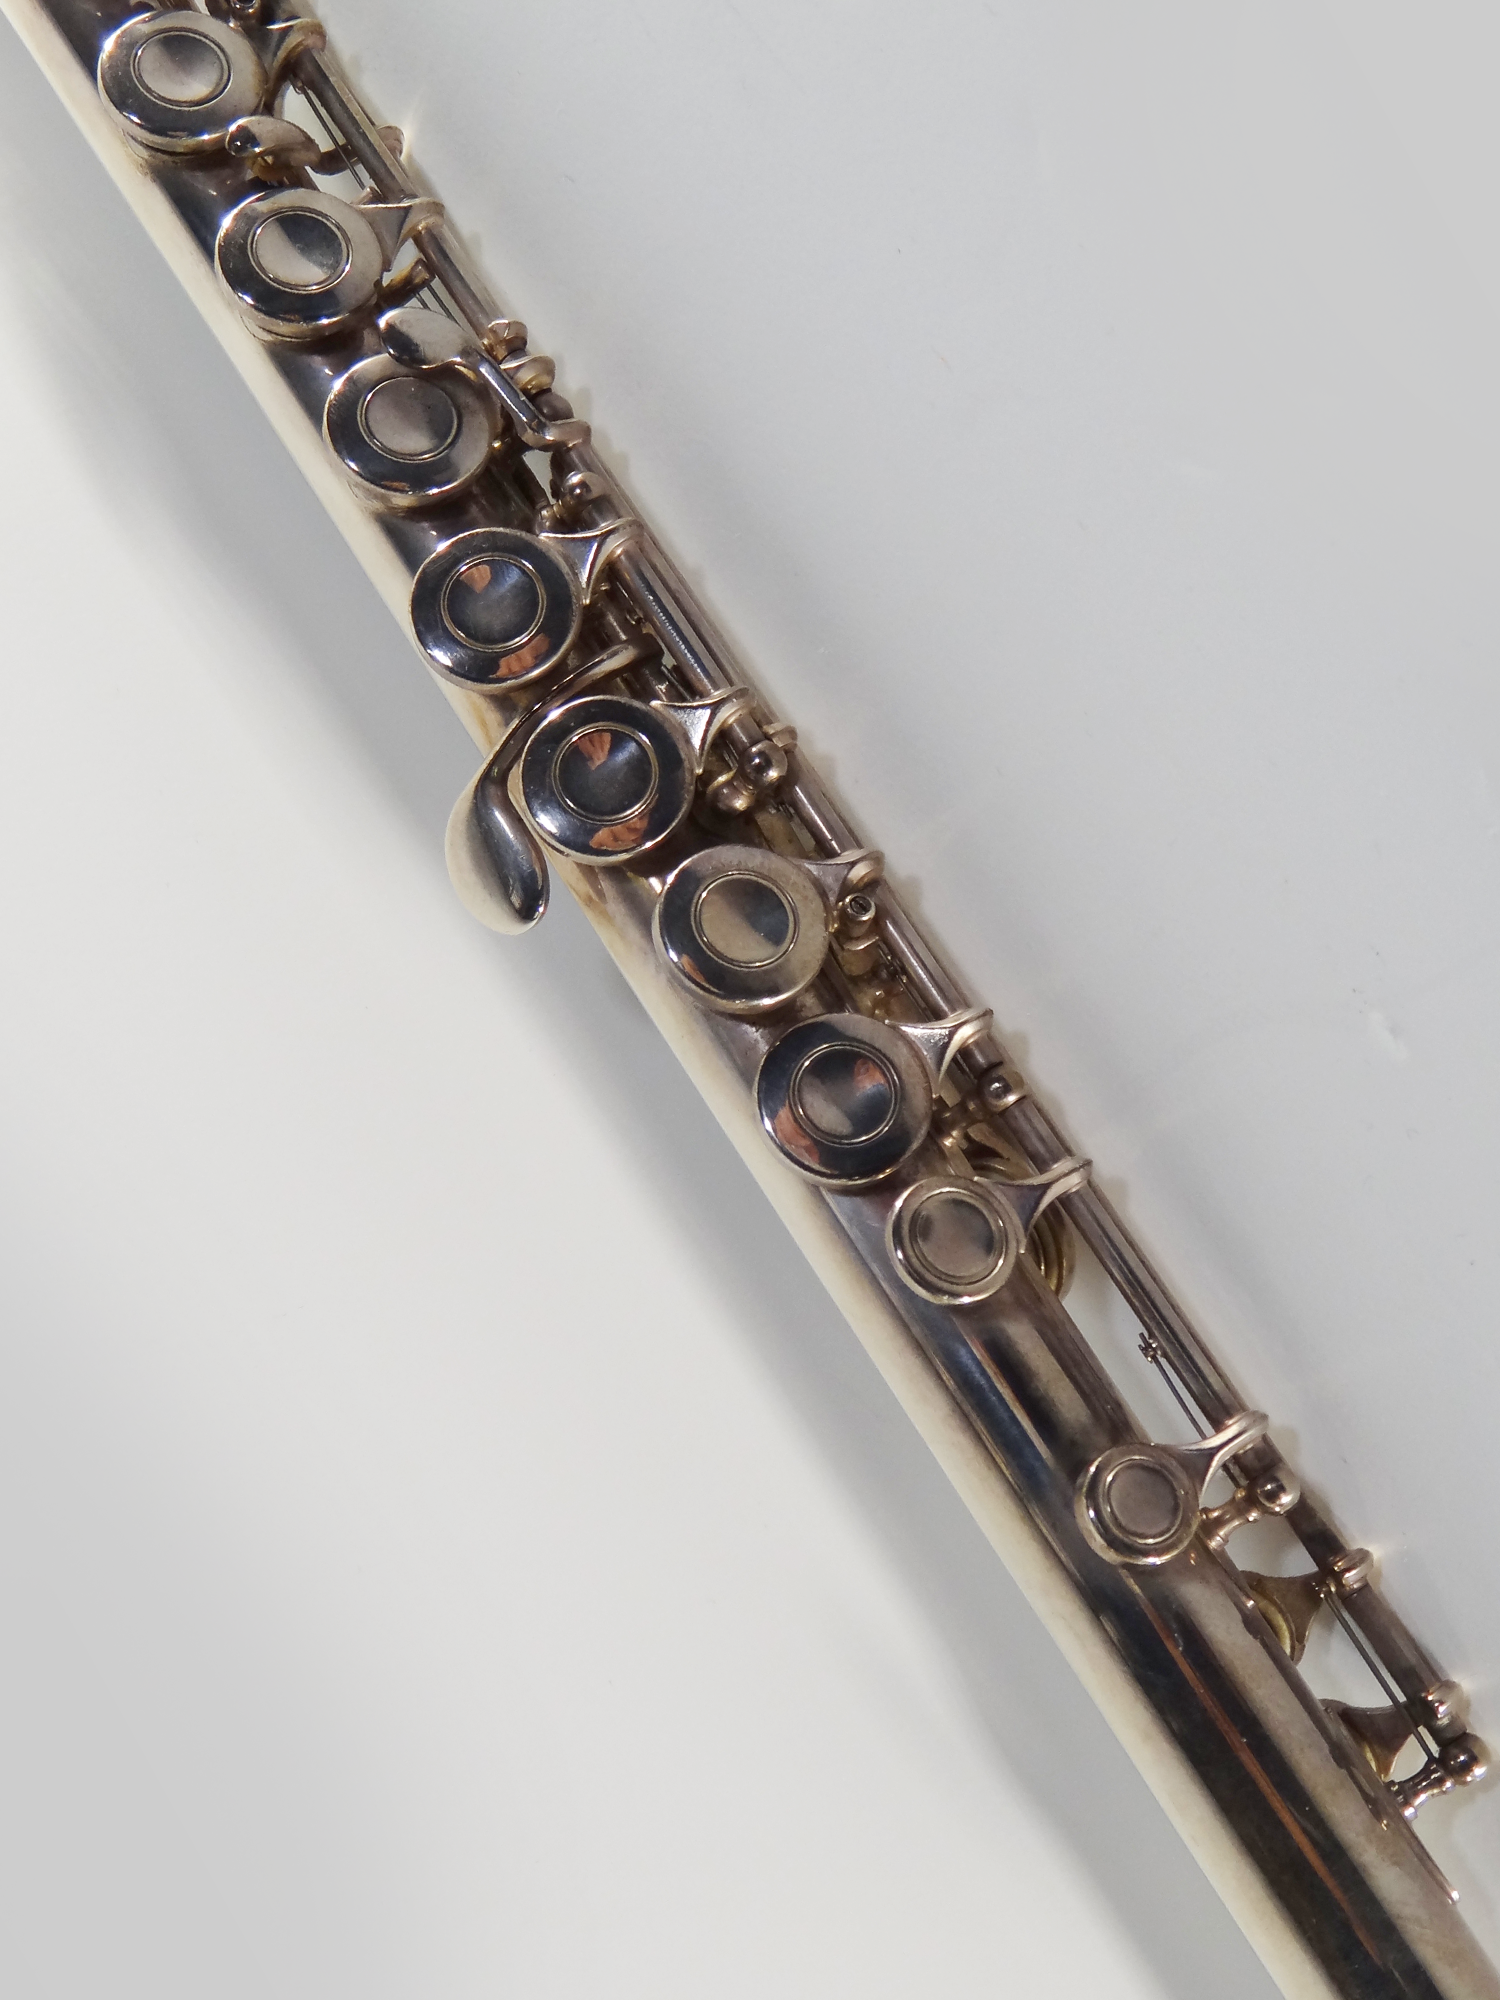 Bundy Flute in Original Case